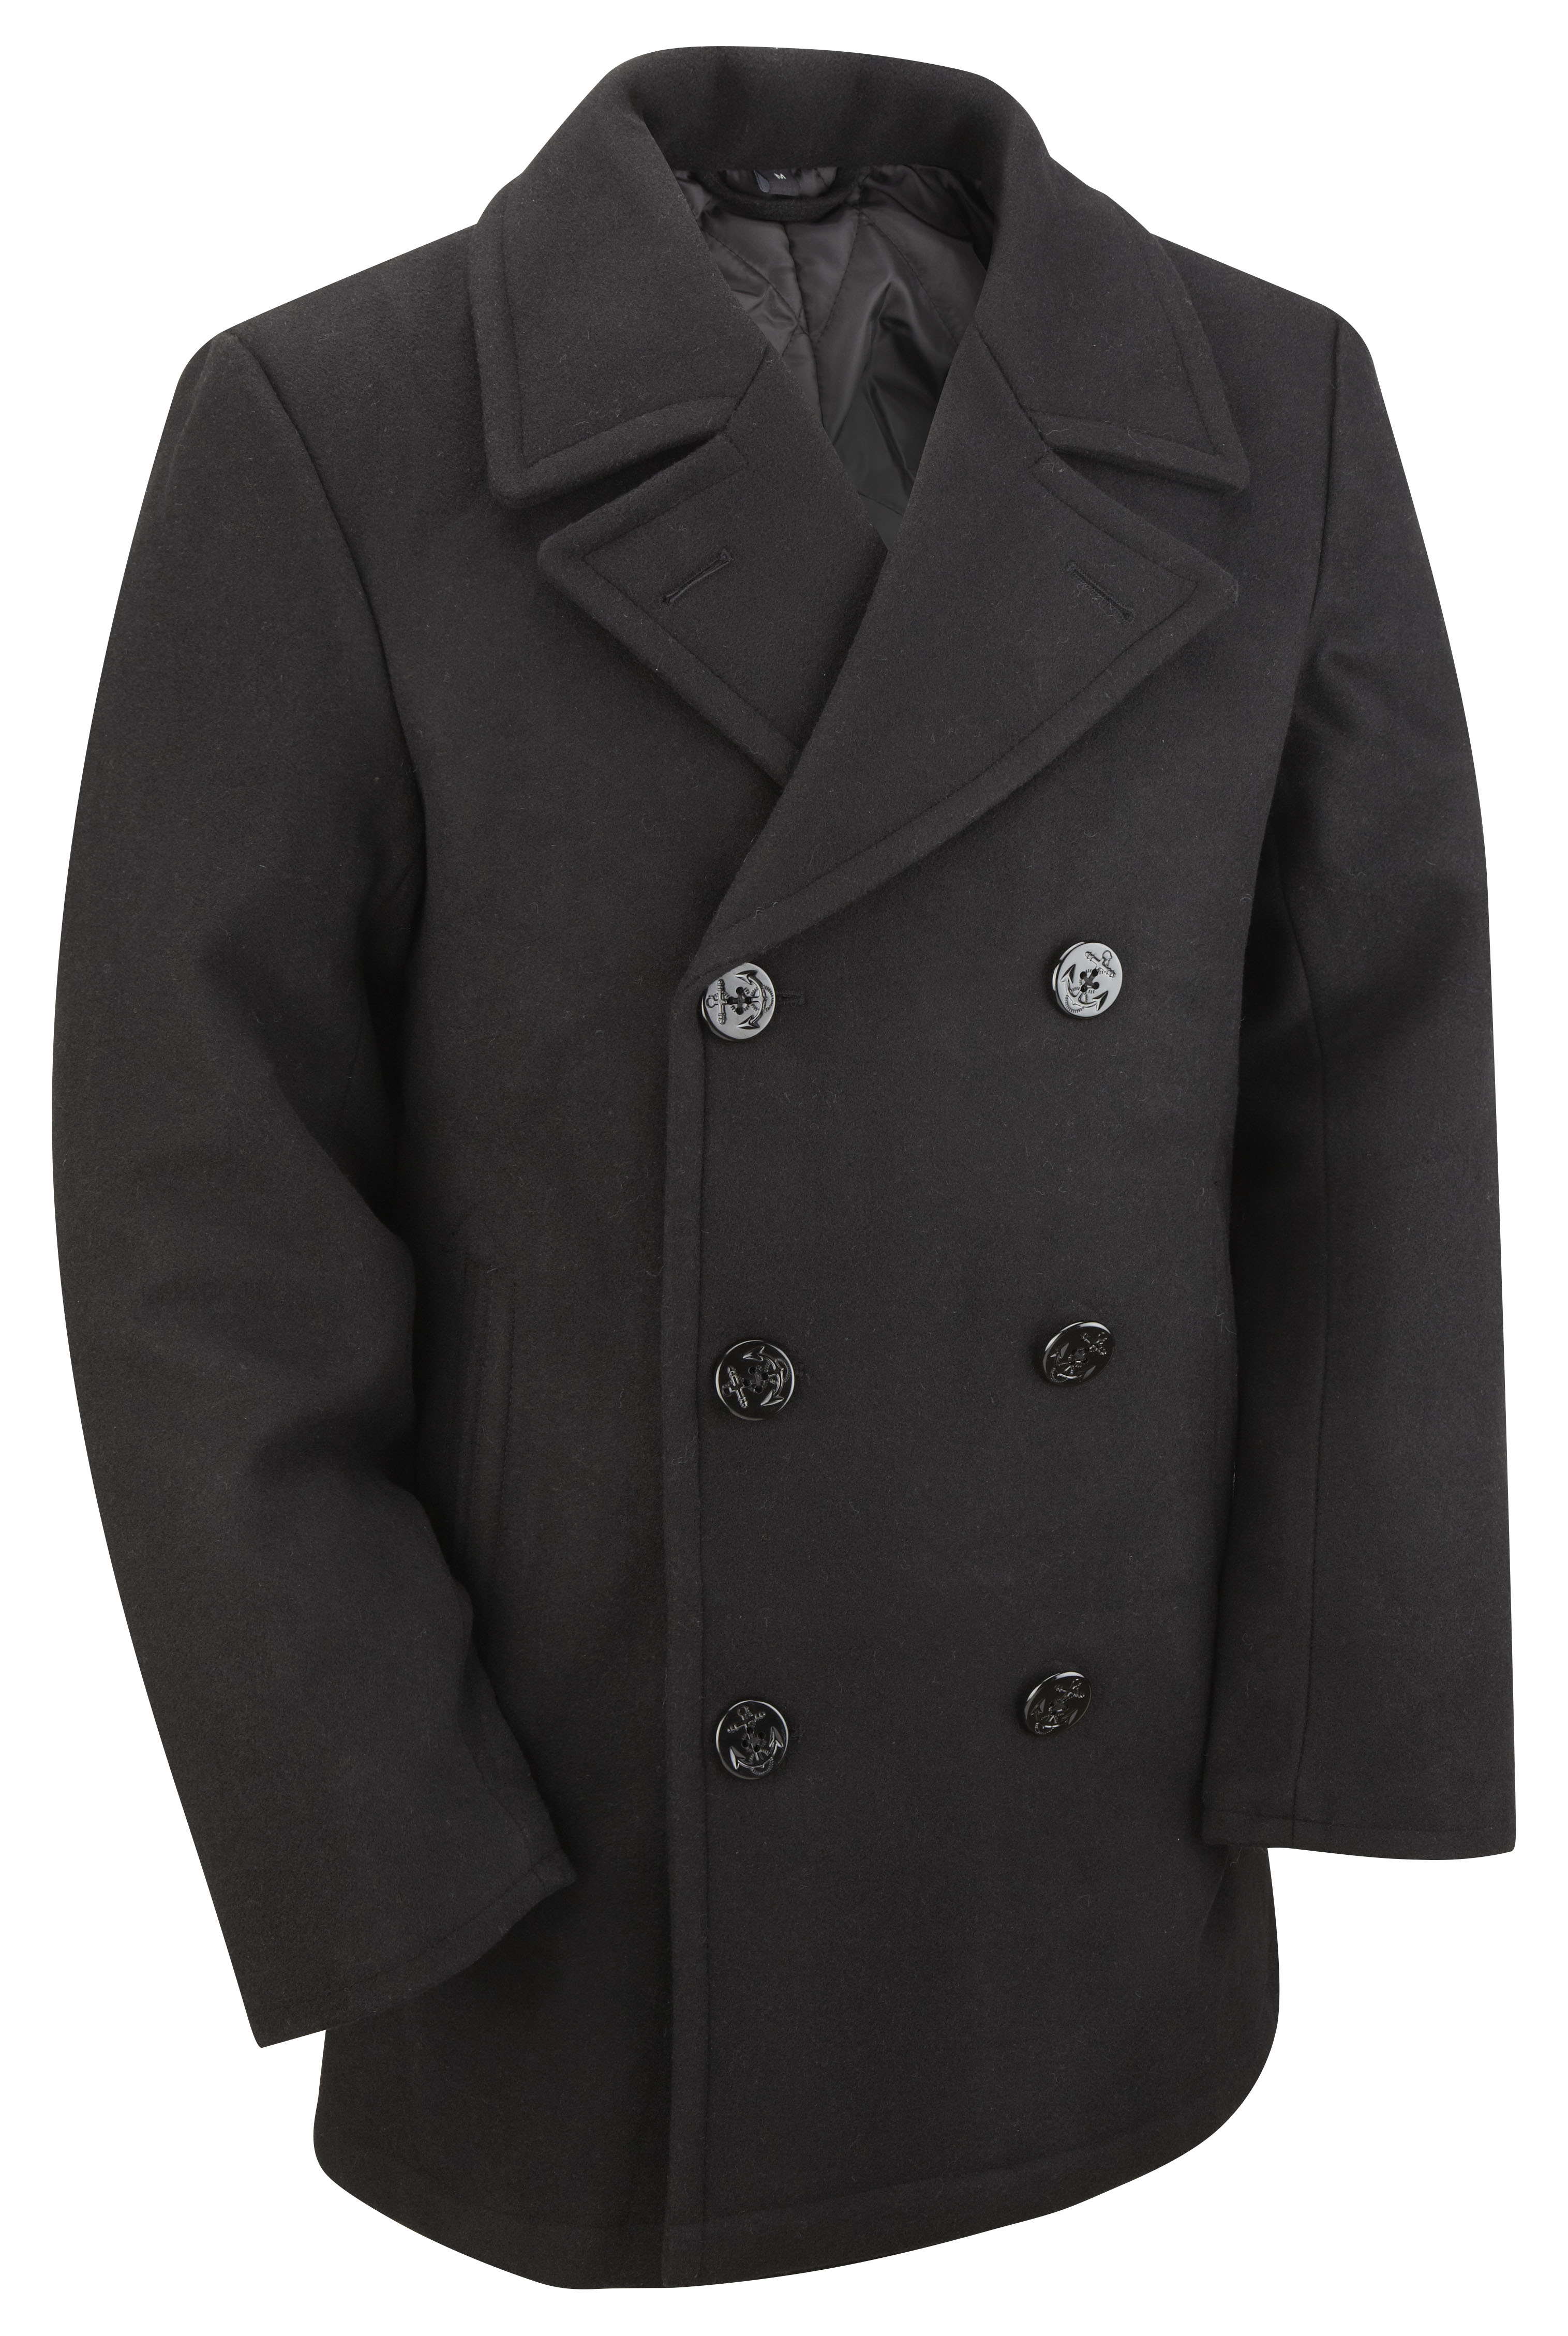 Buy New Us Navy Style Vintage Wool Winter Pea Coat